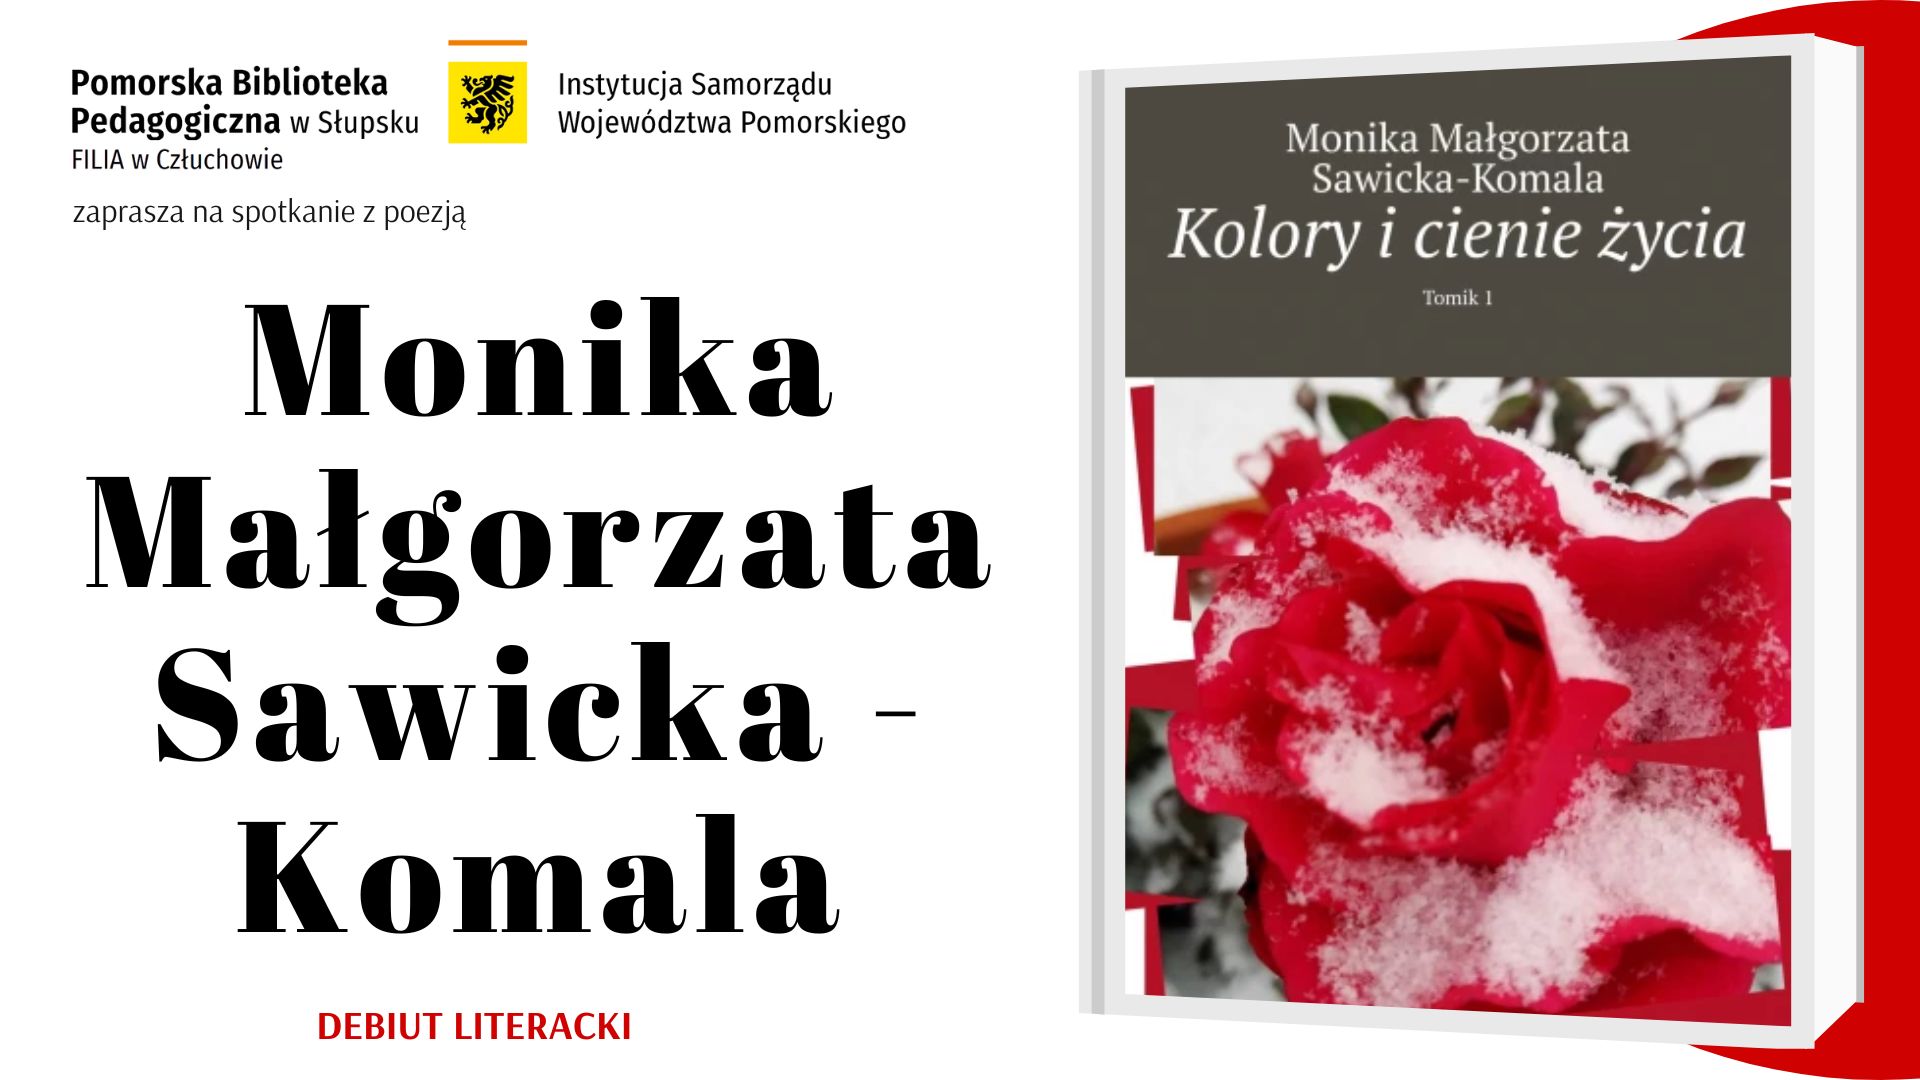 PBP w Słupsku Filia w Człuchowie zaprasza na spotkanie z poezją. Monika Małgorzata Sawicka-Komala. Debiut literacki